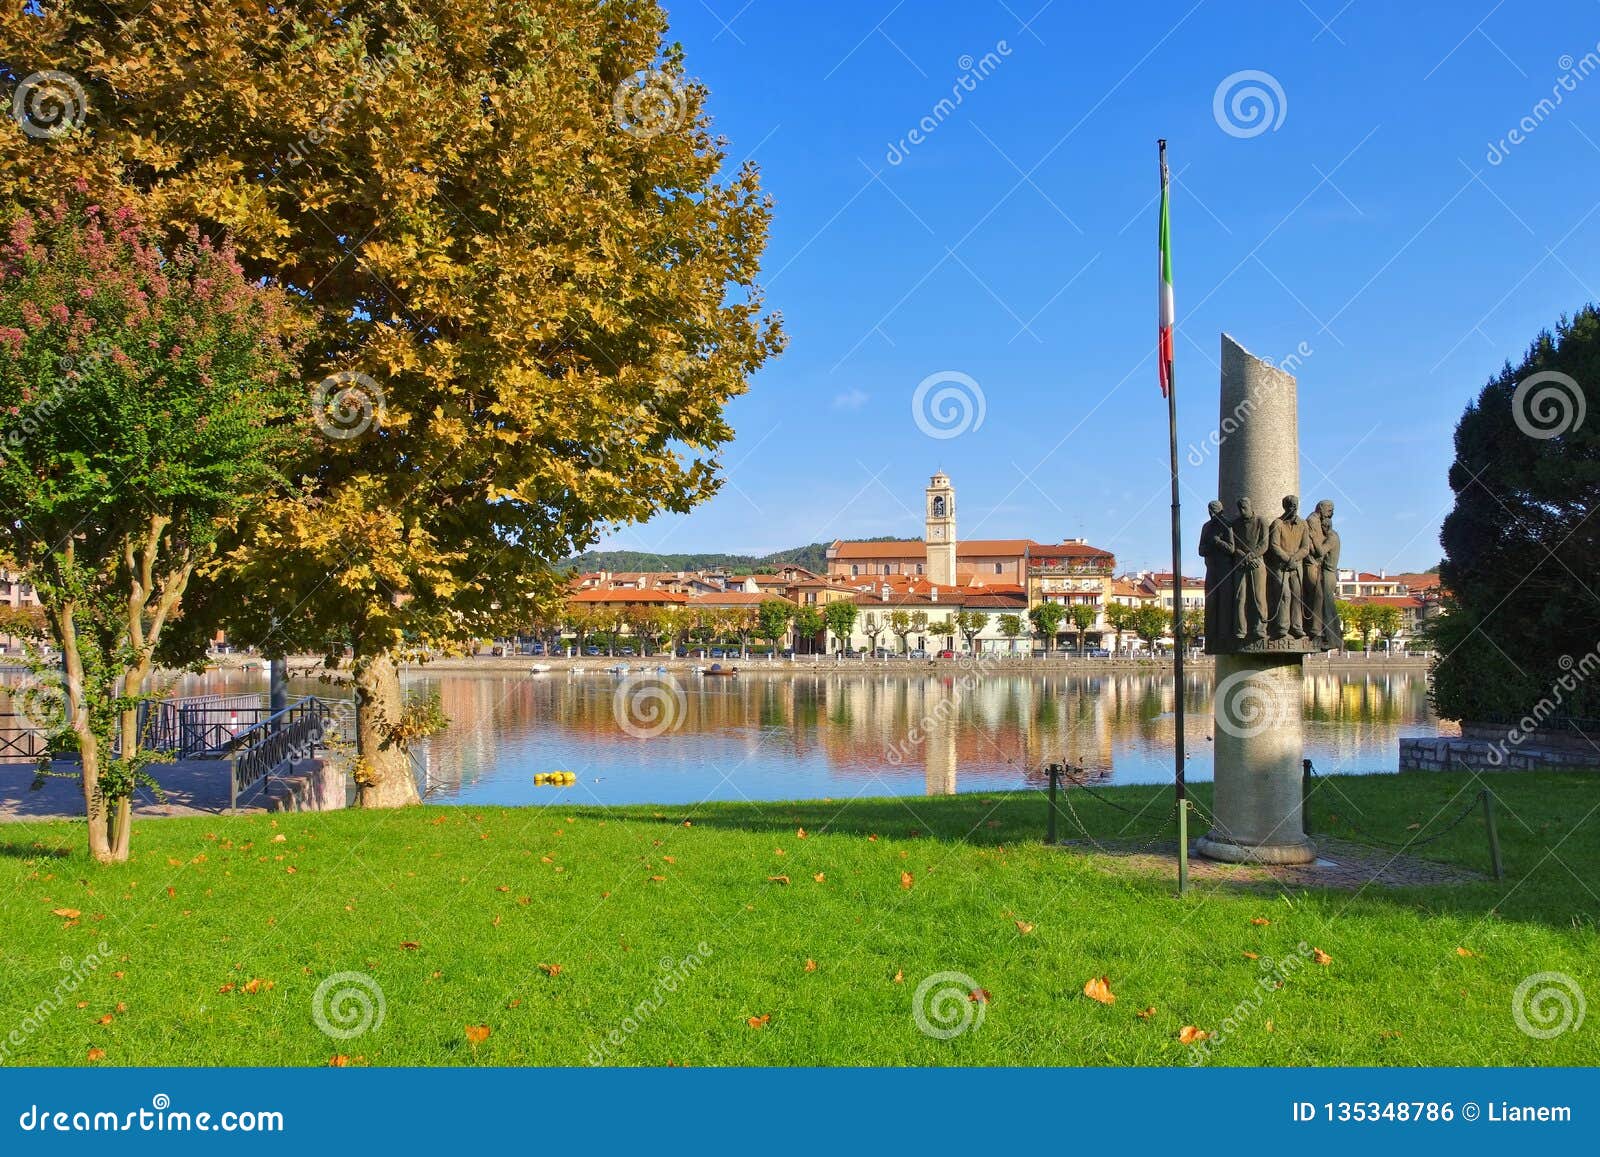 Sesto Calende on Lake Lago Maggiore Stock Photo Image of calende